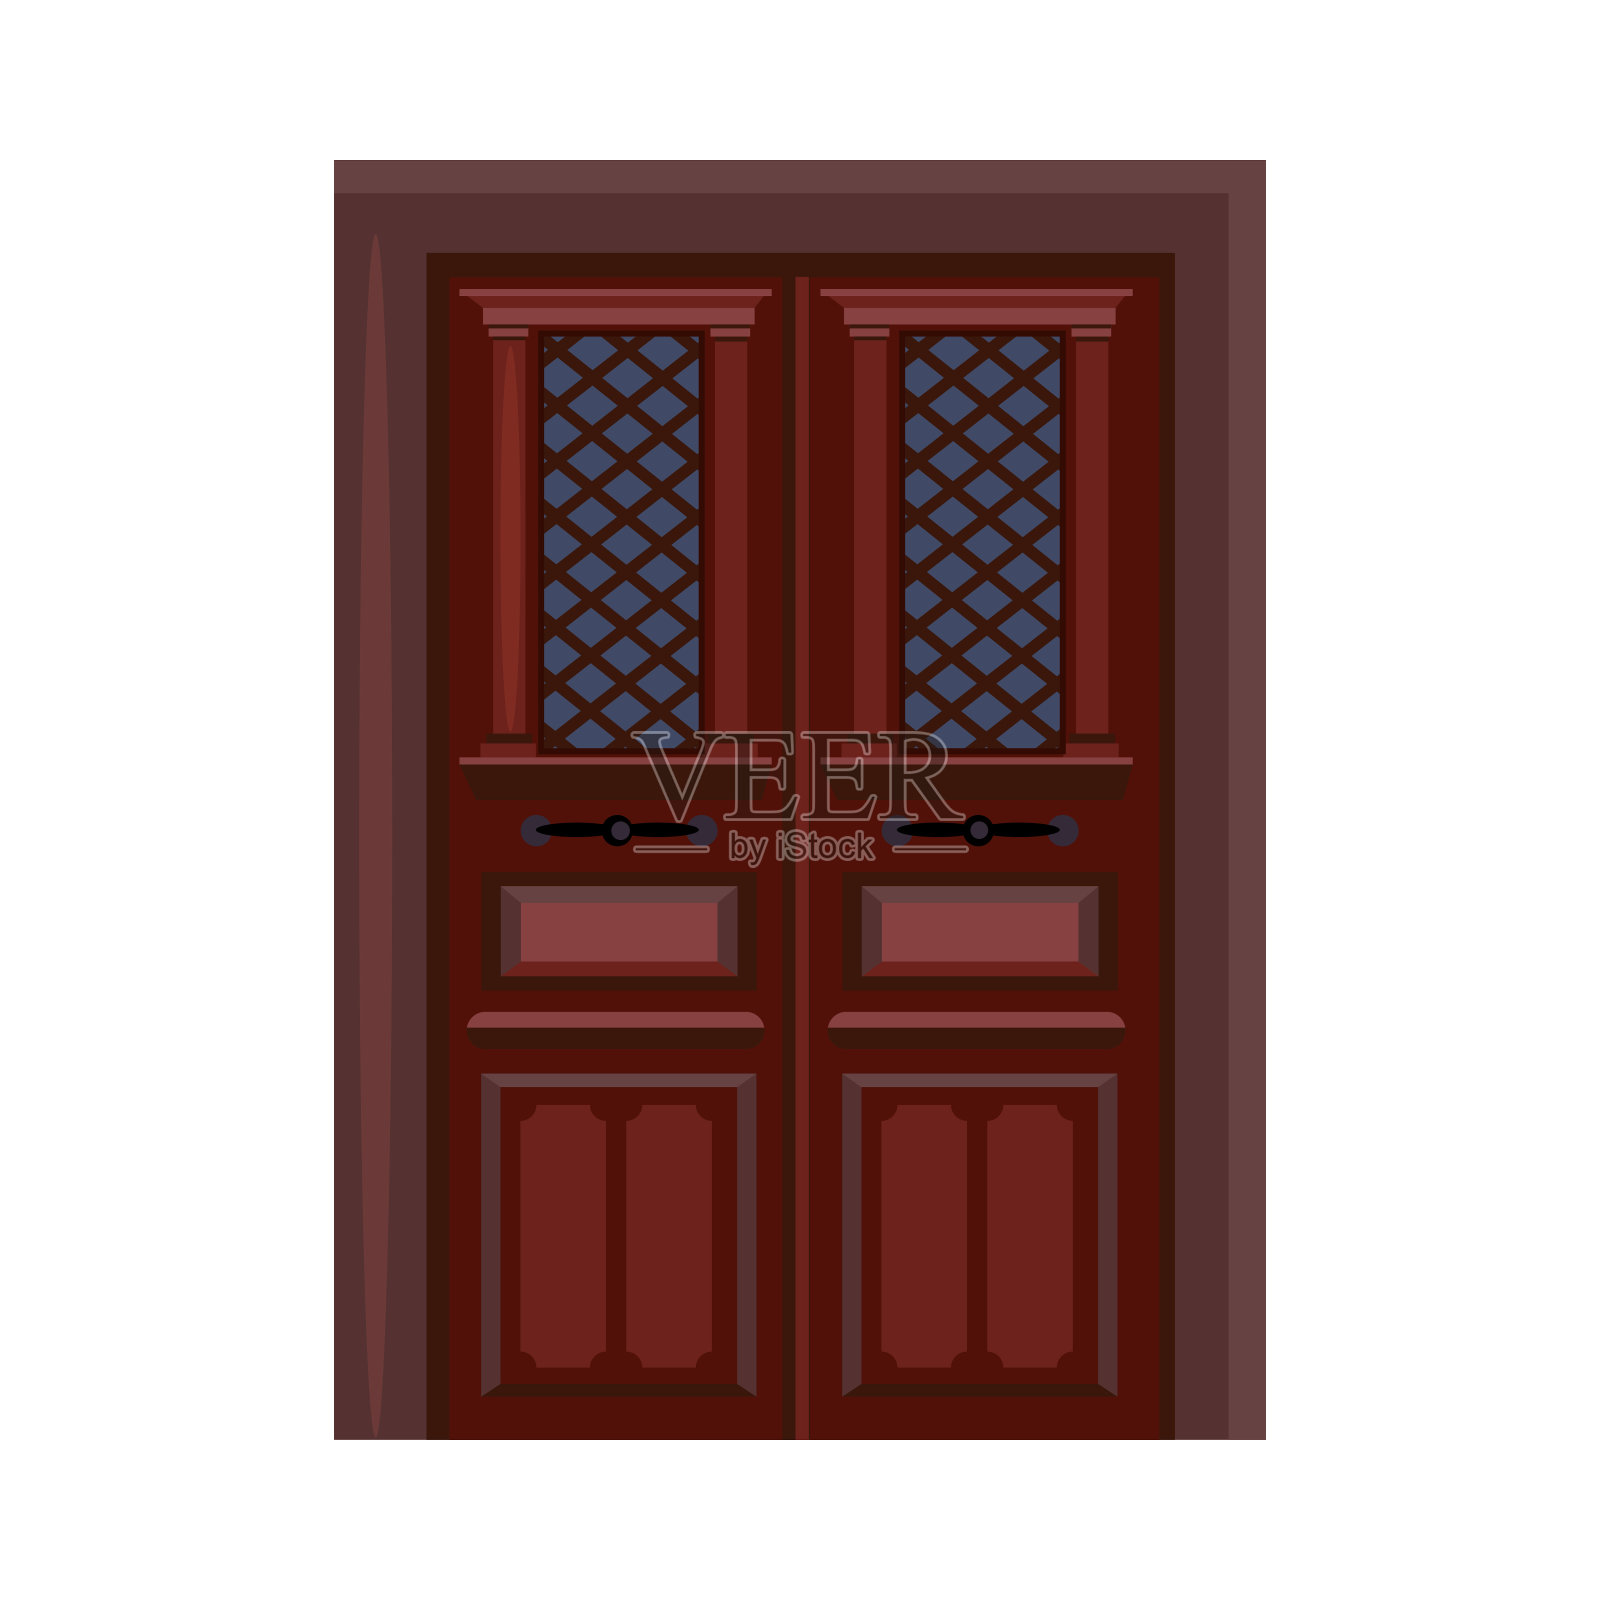 房子的门。木门，玻璃，入口设计元素图片